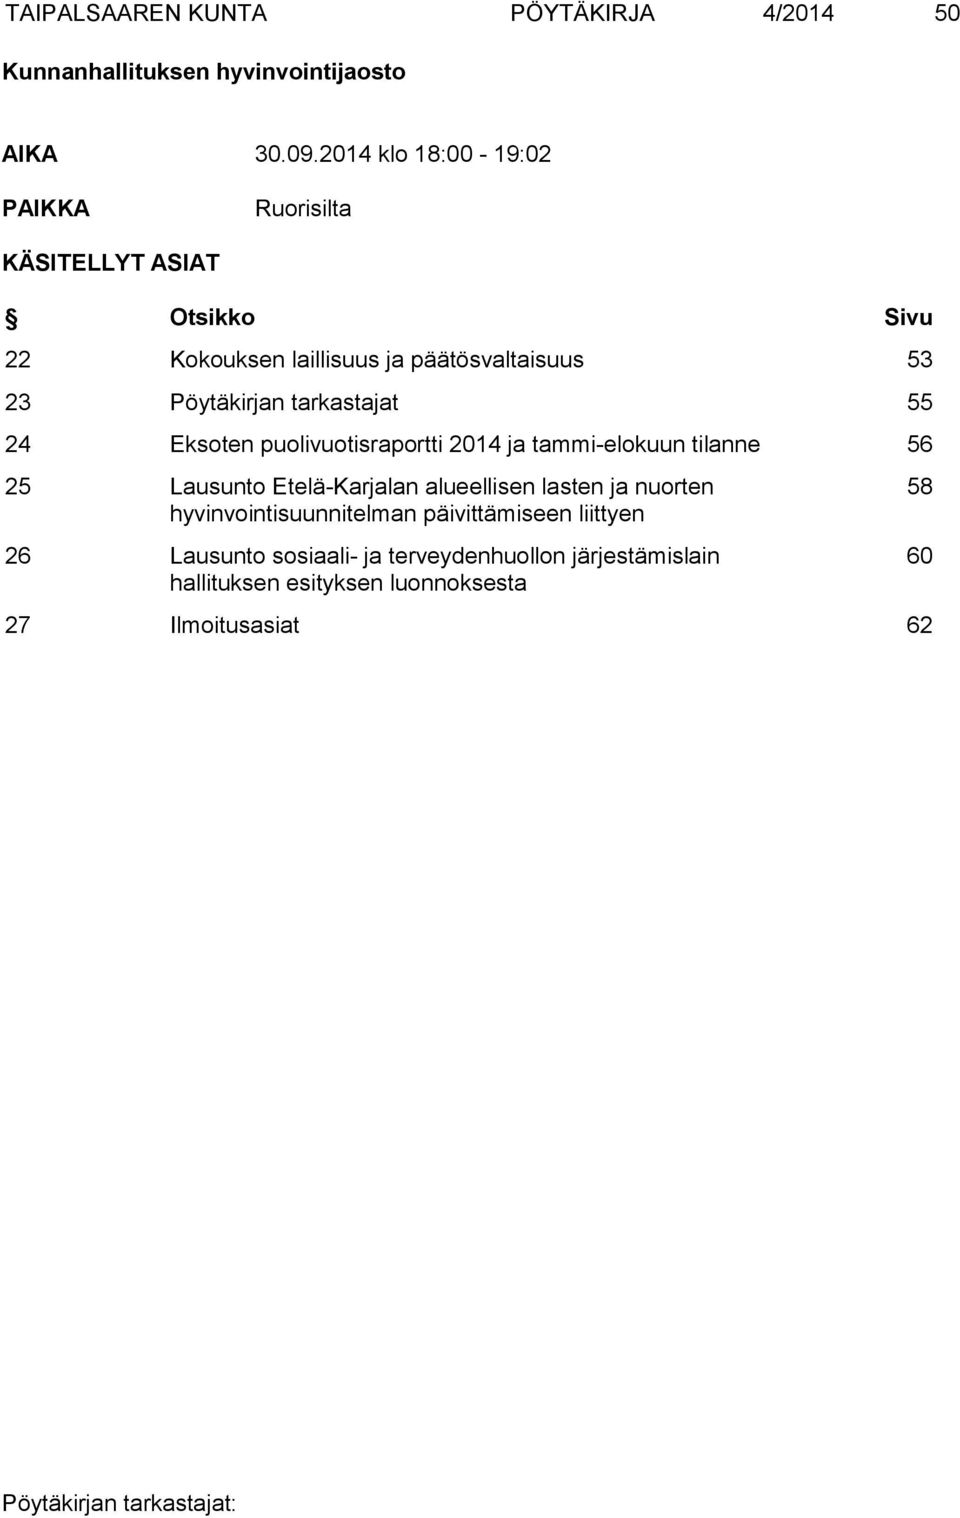 Pöytäkirjan tarkastajat 55 24 Eksoten puolivuotisraportti 2014 ja tammi-elokuun tilanne 56 25 Lausunto Etelä-Karjalan alueellisen